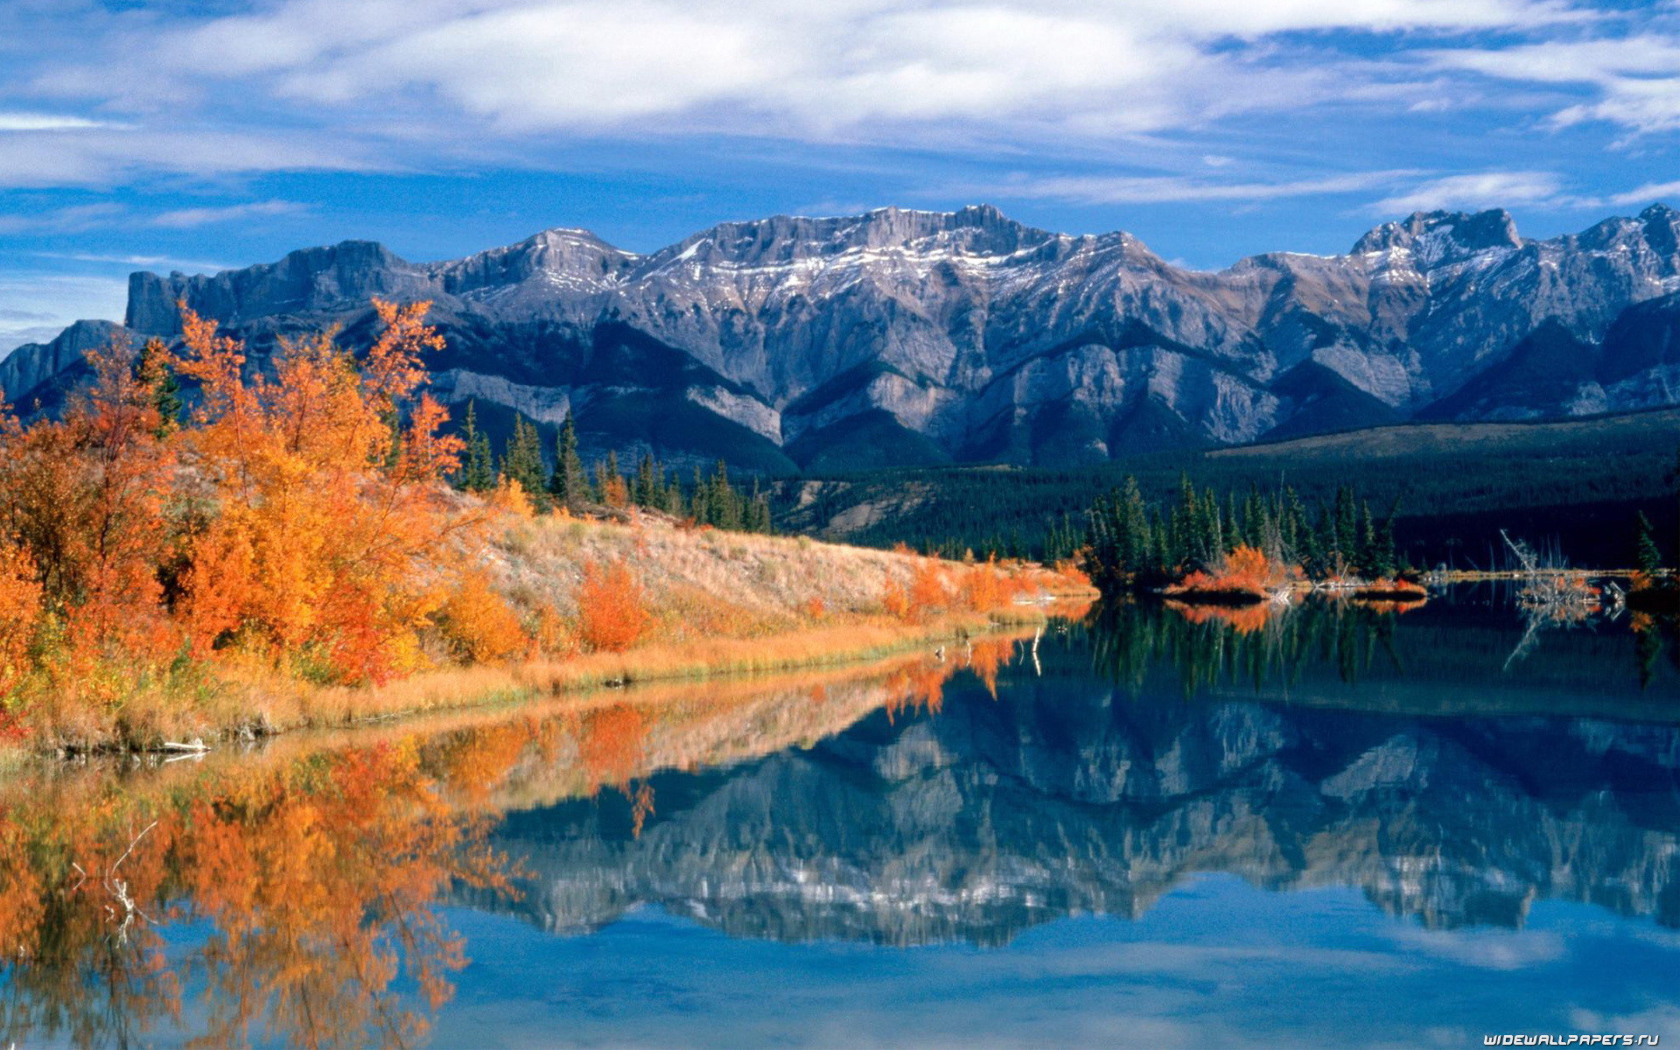 Autumn on the Bank of mountain lake